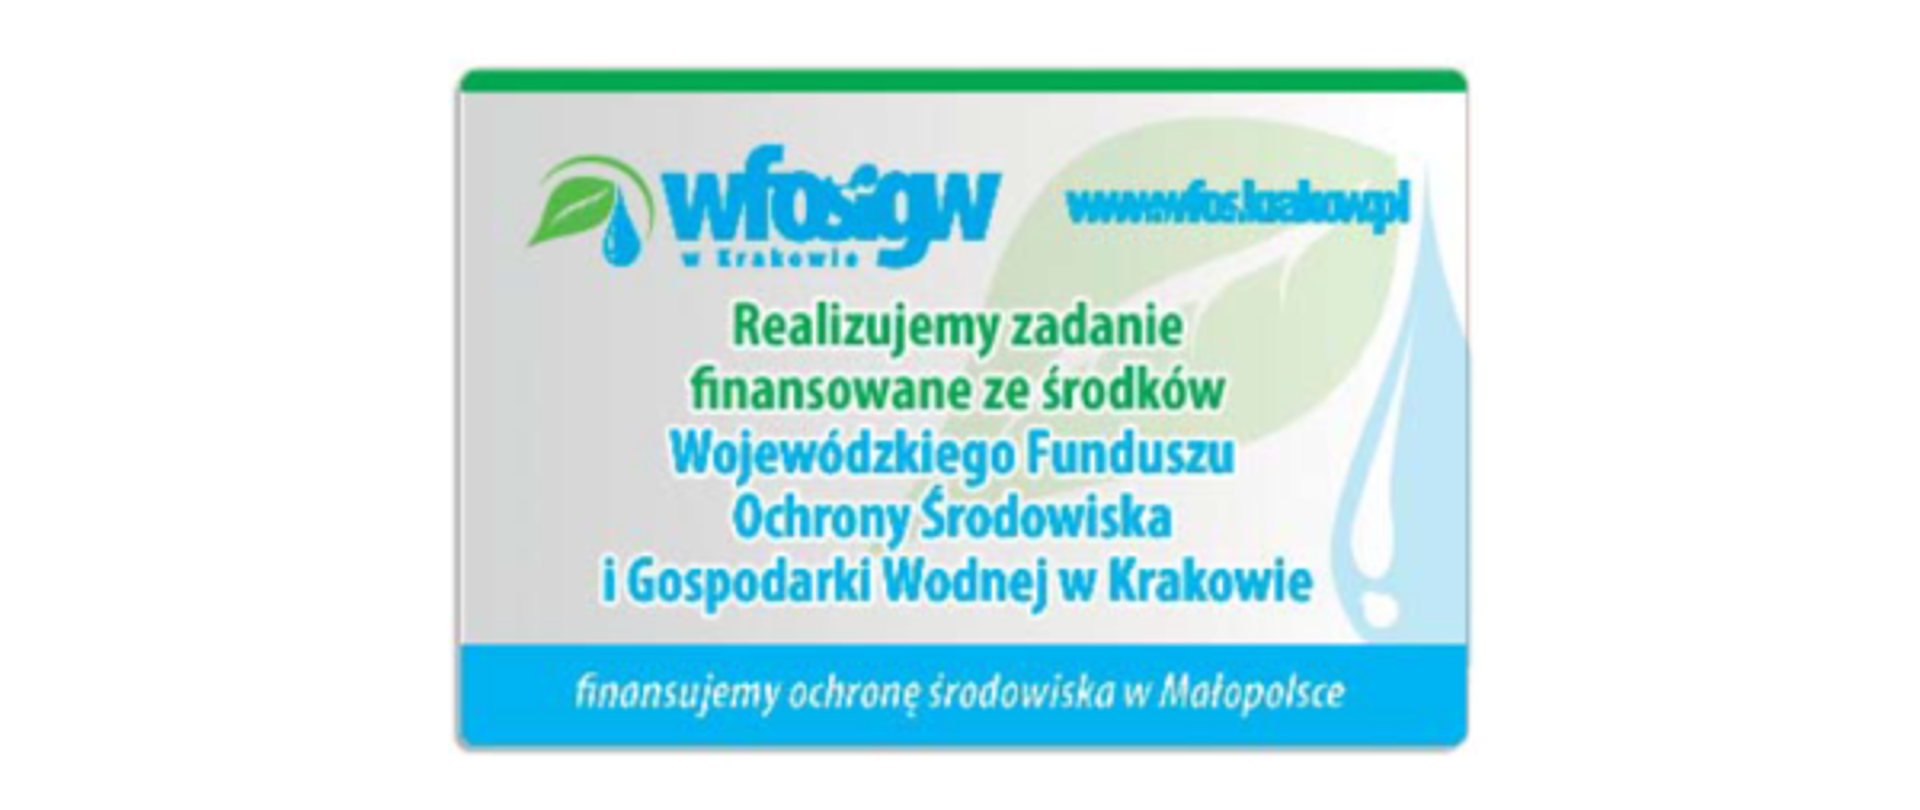 Logo WFOŚIGW i hasło "Realizujemy zadanie finansowane se środków Wojewódzkiego Funduszu Ochrony Środowiska i Gospodarki Wodnej w Krakowie"